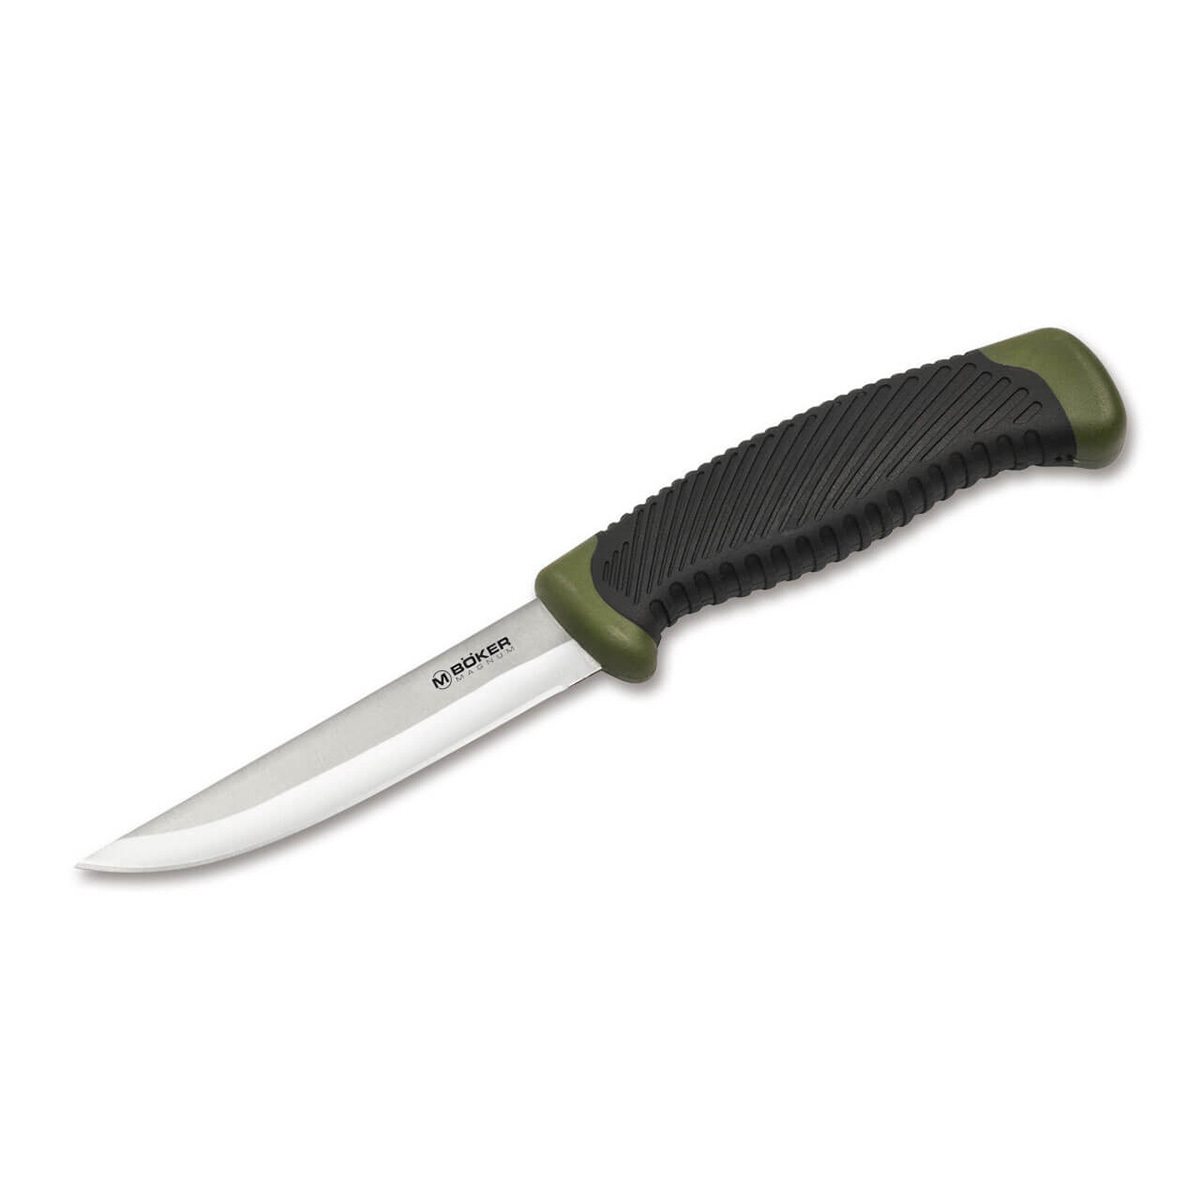 Нож рыбацкий с фиксированным клинком Magnum Falun Green, сталь 420 Satin Plain, рукоять полипропилен/термопластик